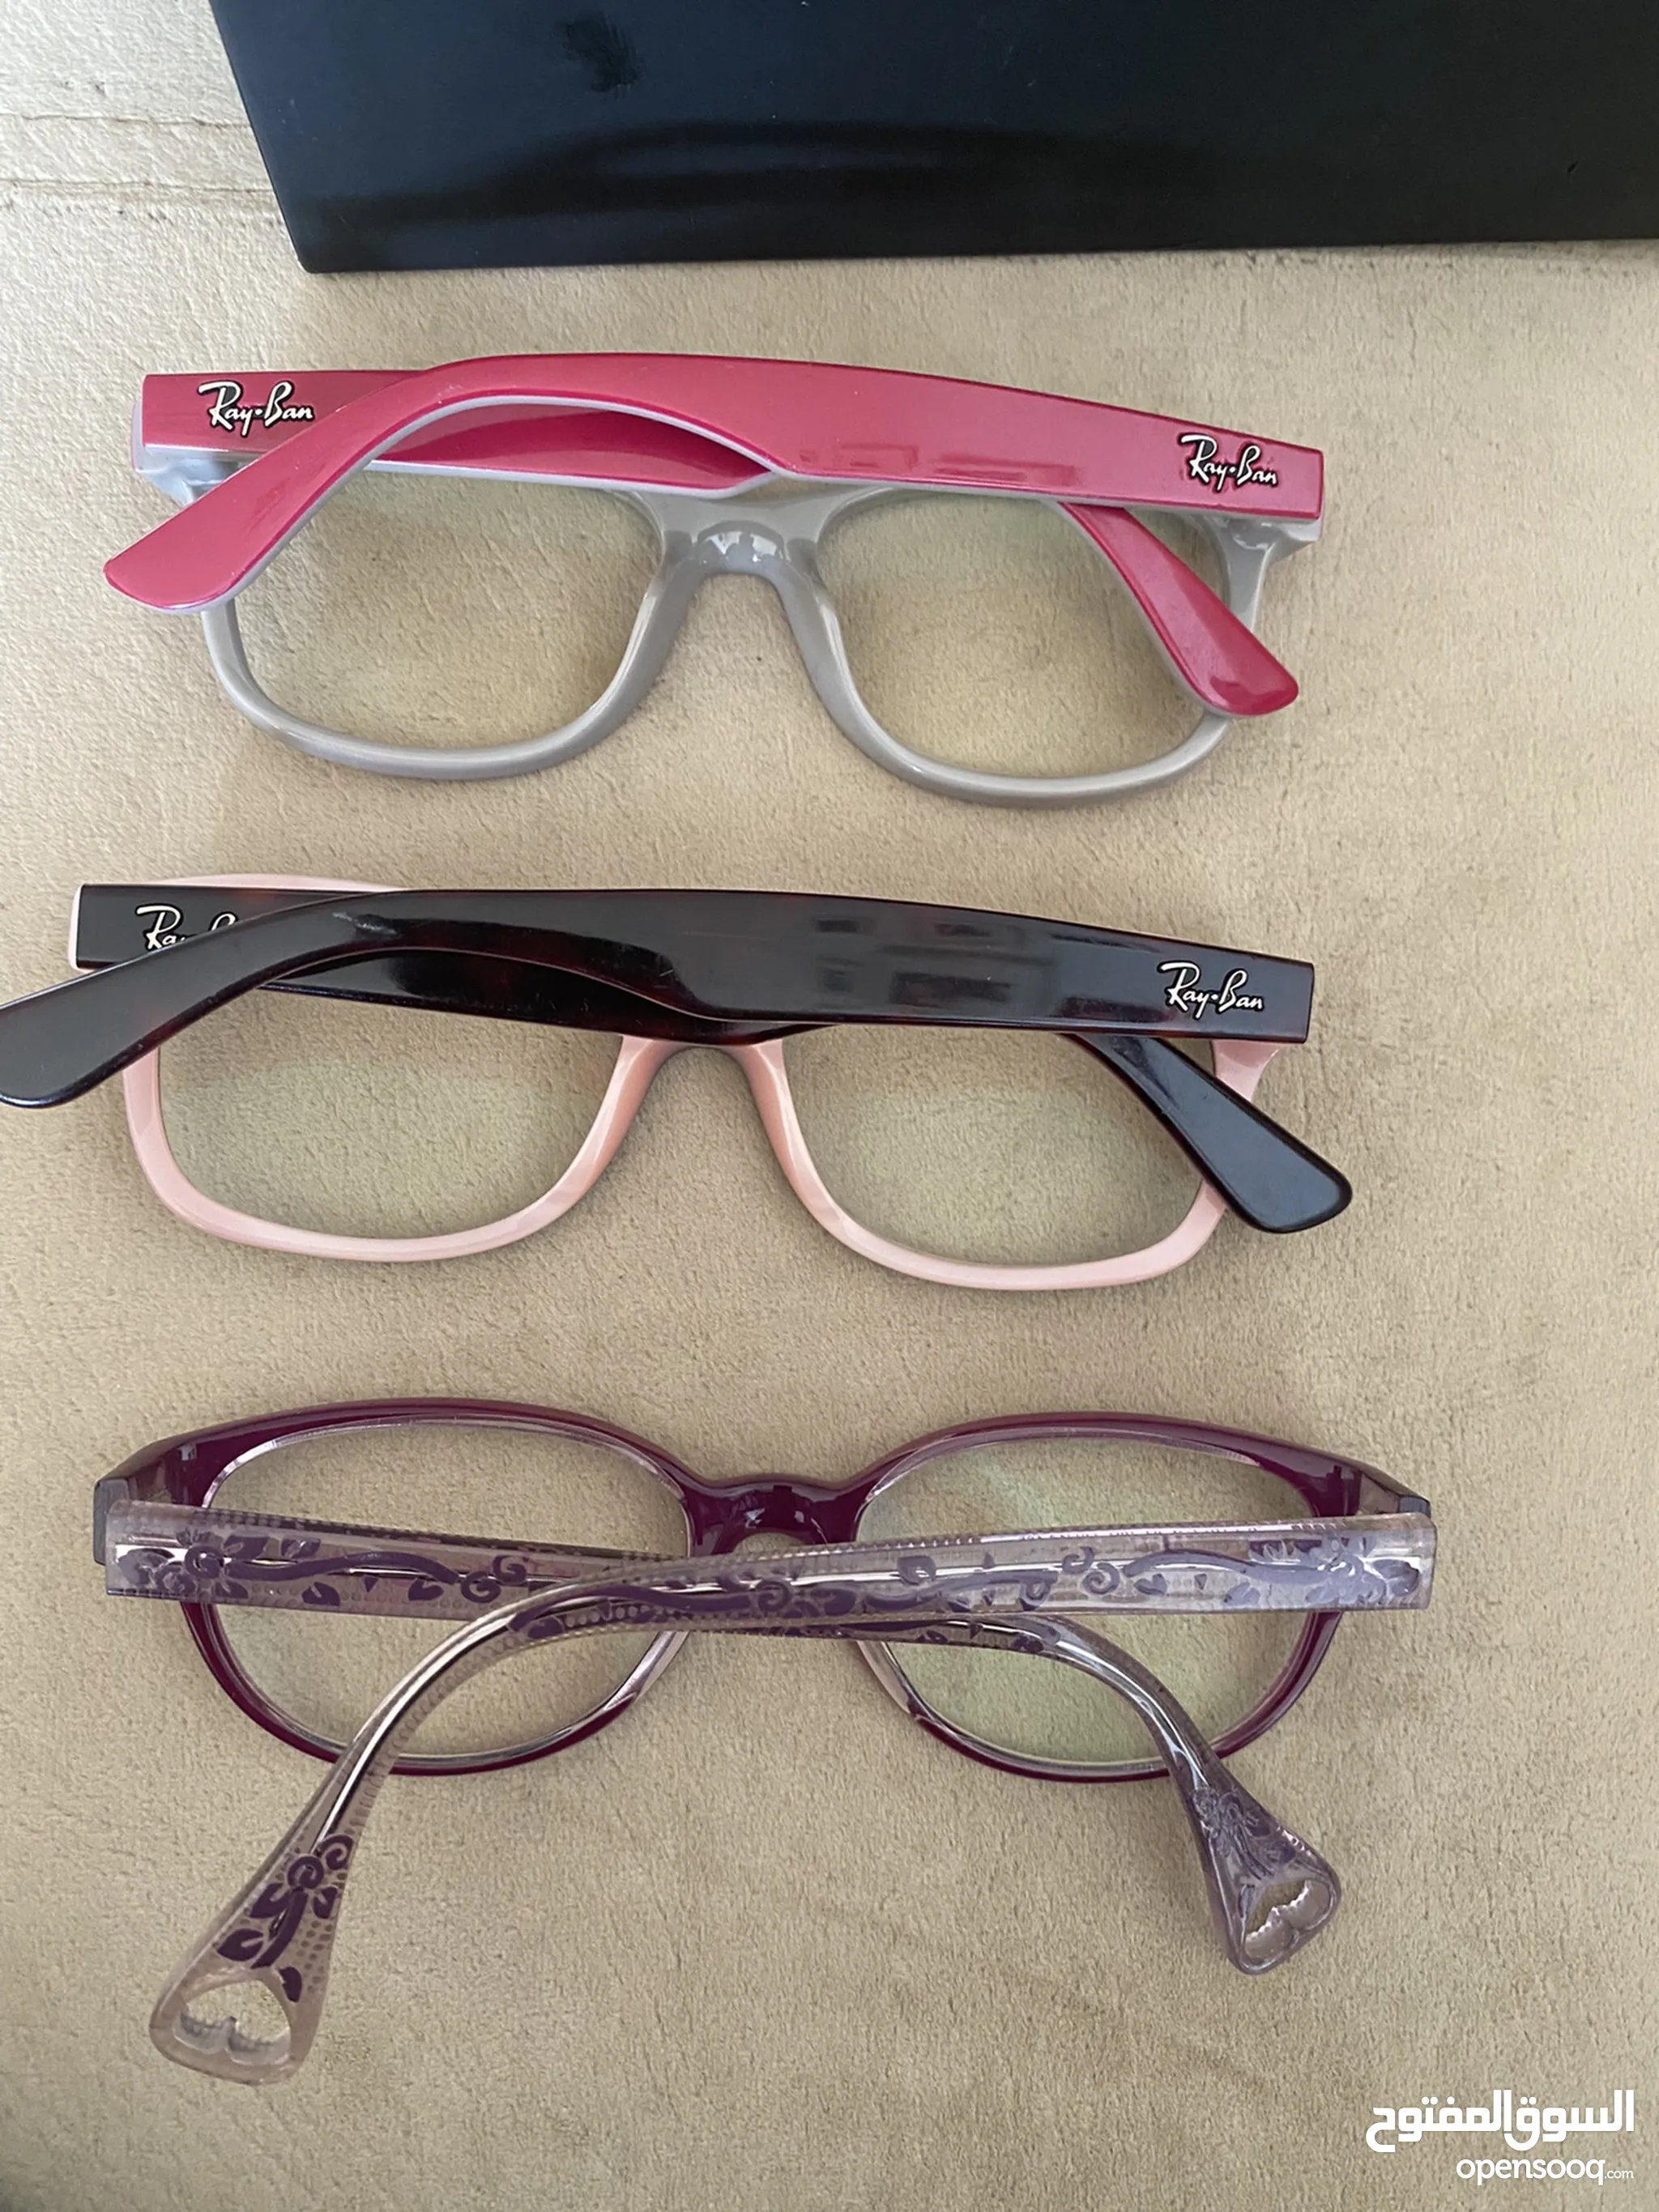 نظارات رجالية للبيع في الأردن : شمسية : طبية : نظارات شفافة : ريبان على  السوق المفتوح